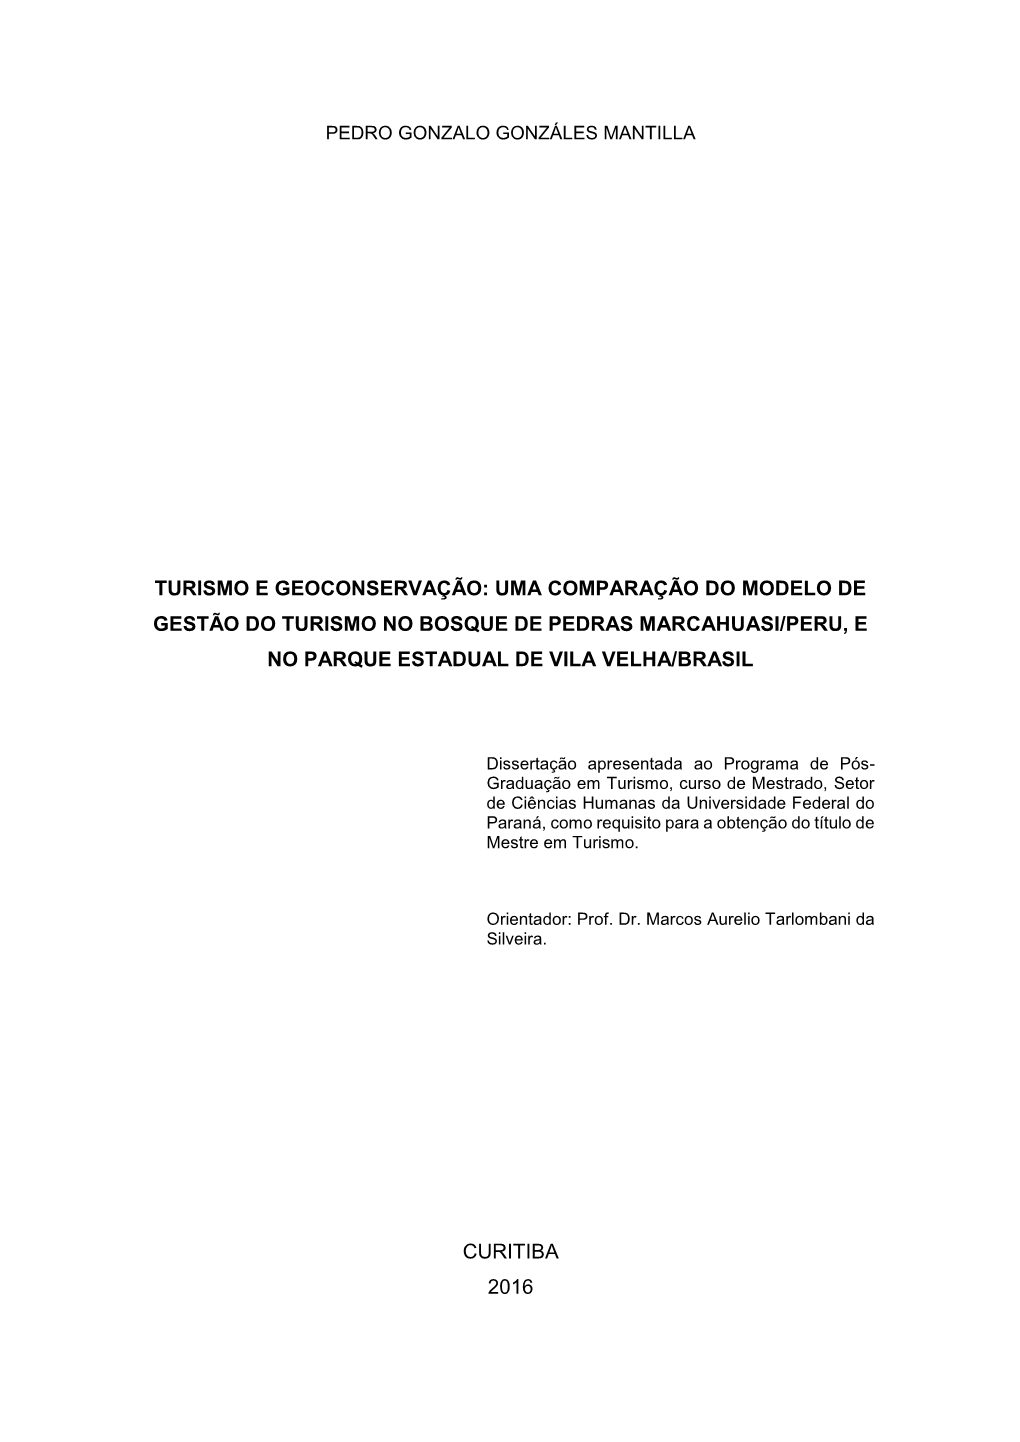 Turismo E Geoconservação: Uma Comparação Do Modelo De Gestão Do Turismo No Bosque De Pedras Marcahuasi/Peru, E No Parque Estadual De Vila Velha/Brasil